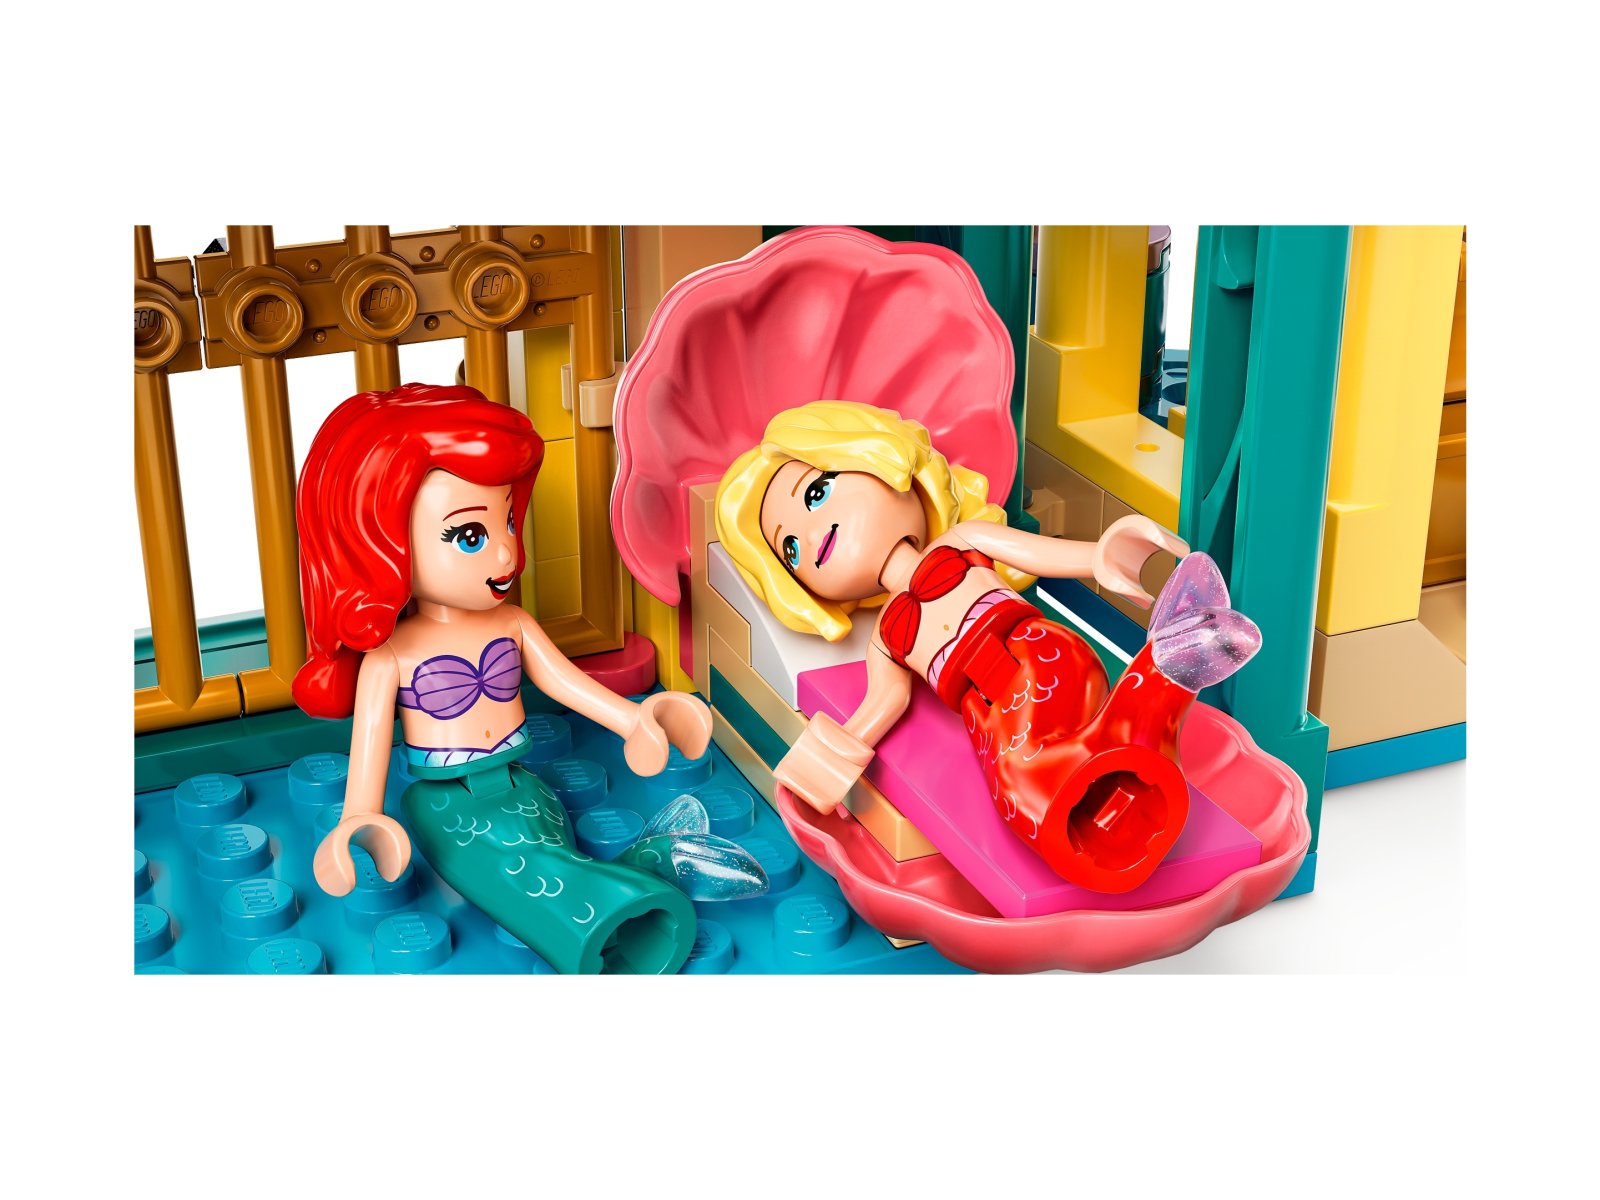 LEGO Disney Podwodny pałac Arielki 43207